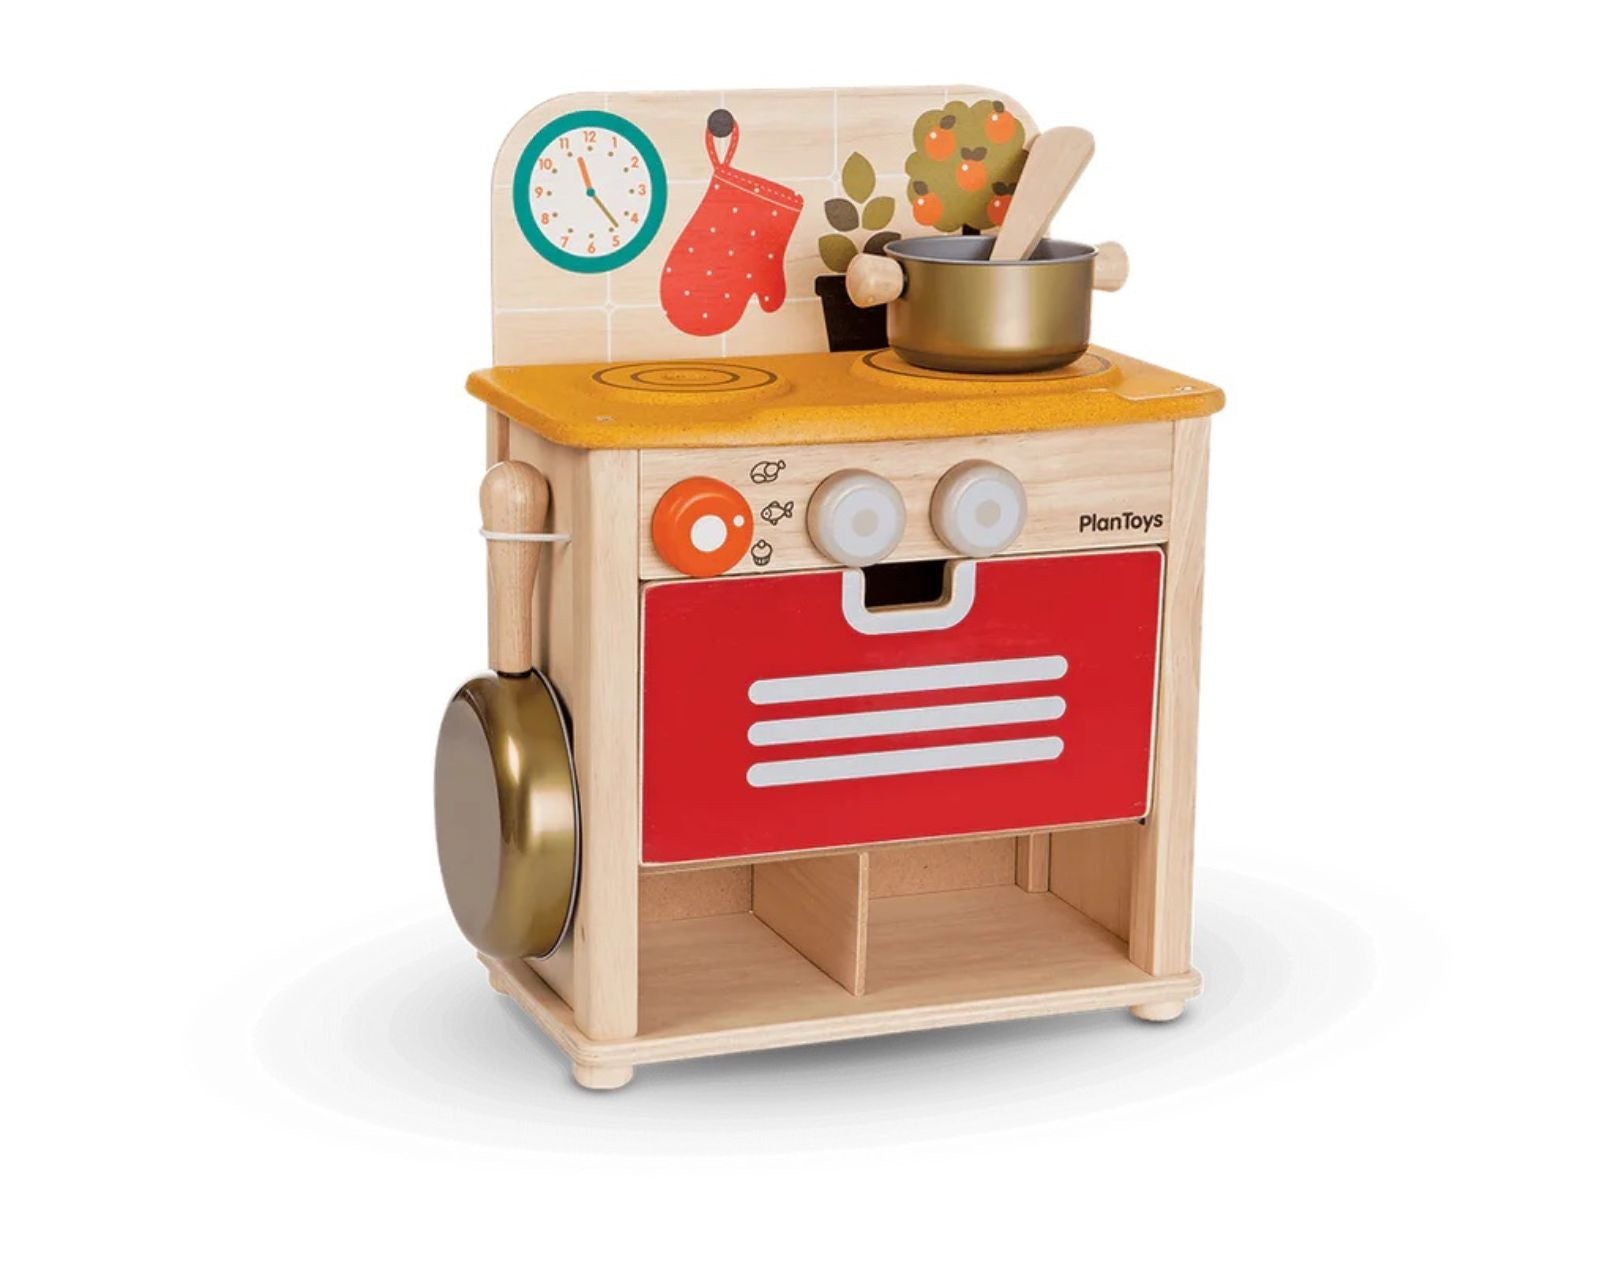 http://tenlittle.com/cdn/shop/files/Ten-Little-Kids-Pretend-Play-PlanToys-Compact-Play-Kitchen8.jpg?v=1696516200